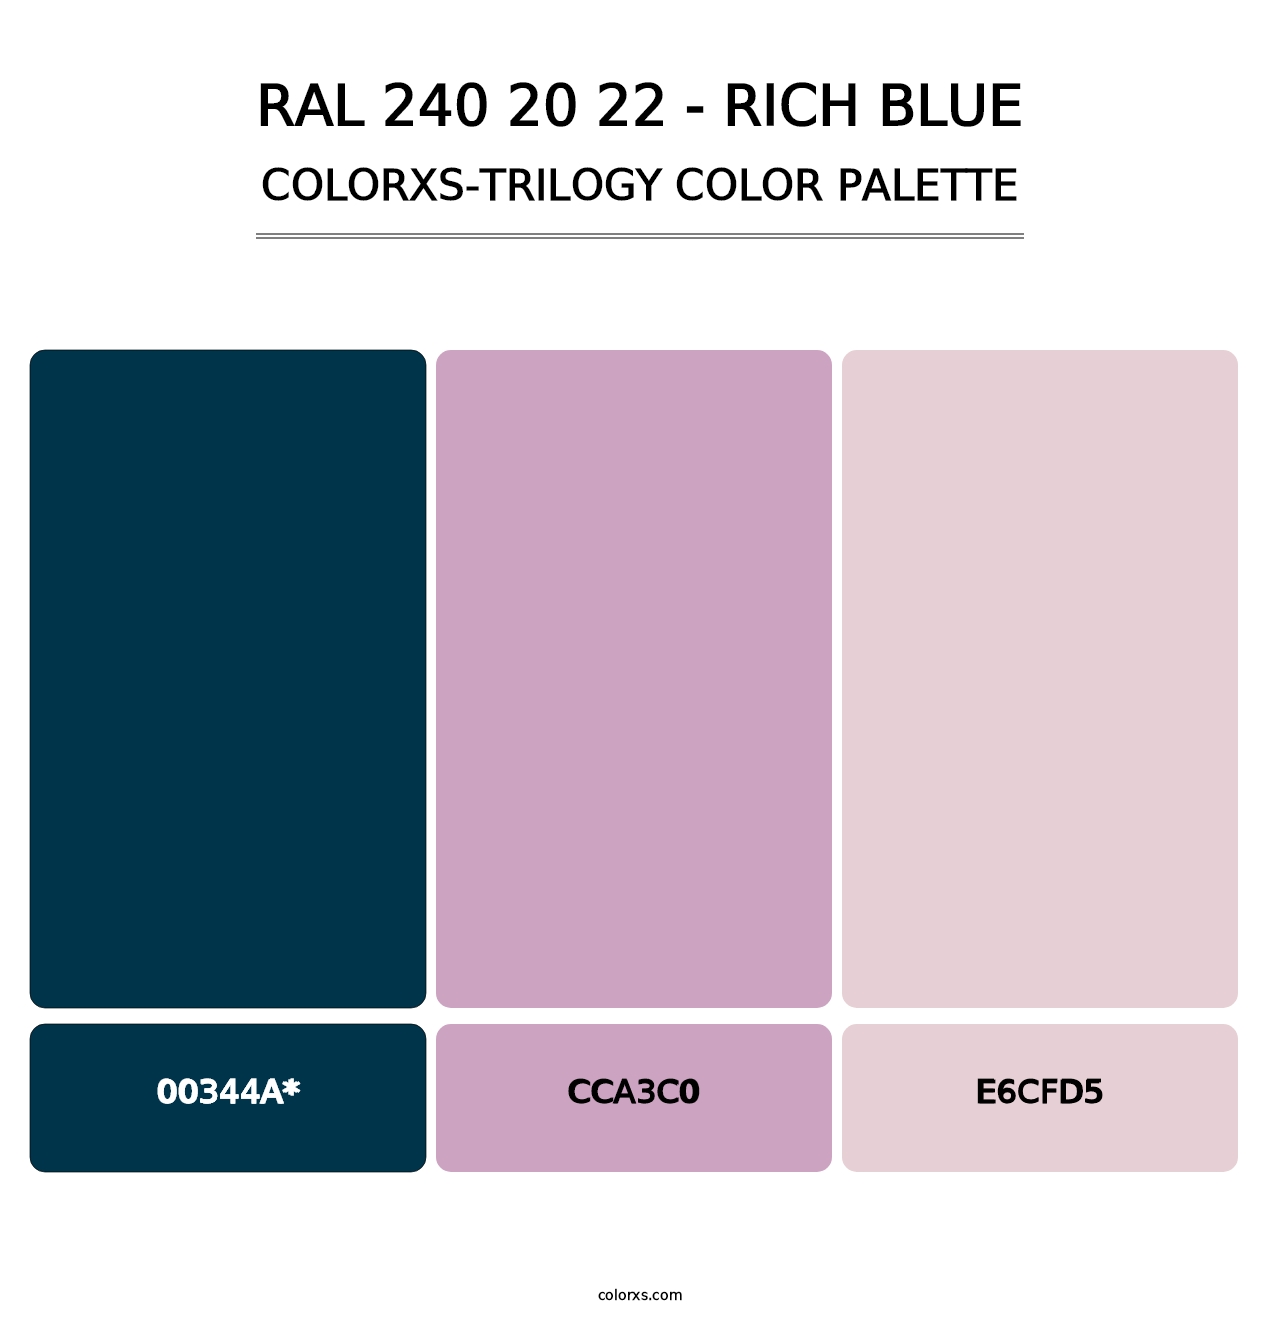 RAL 240 20 22 - Rich Blue - Colorxs Trilogy Palette